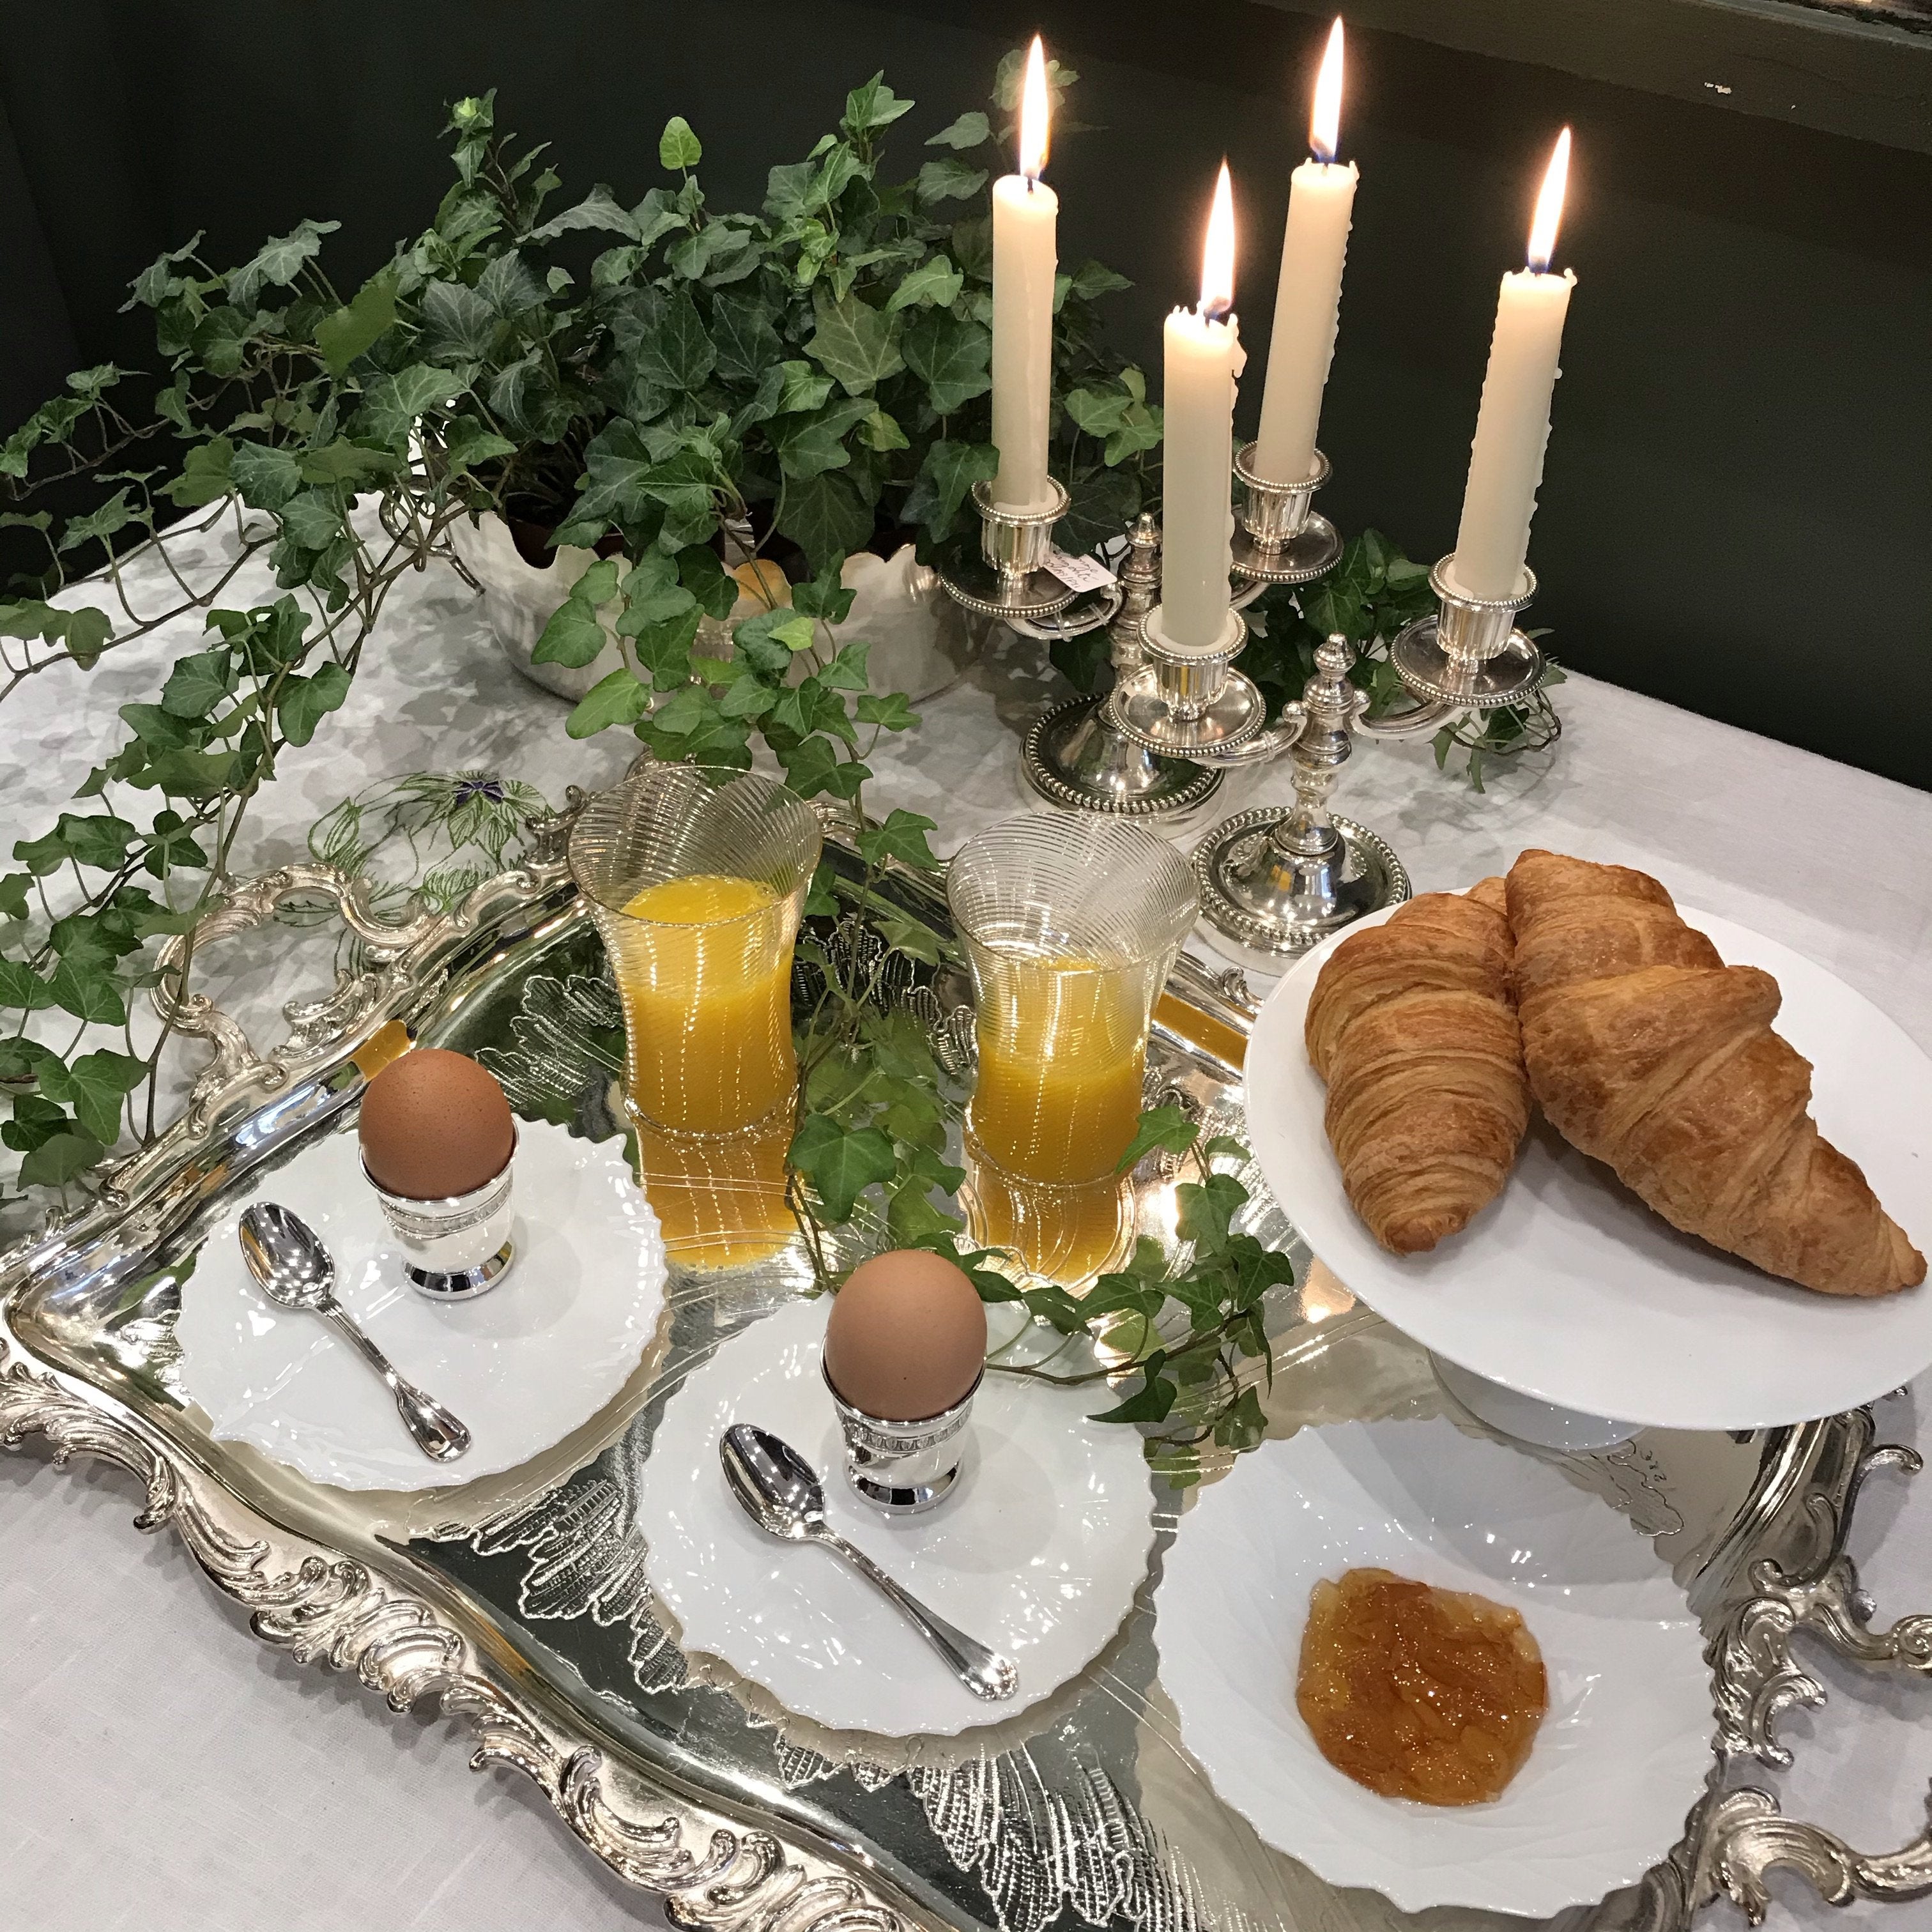 Petit Dejeuner Tradition - EcoTraiteur Paris